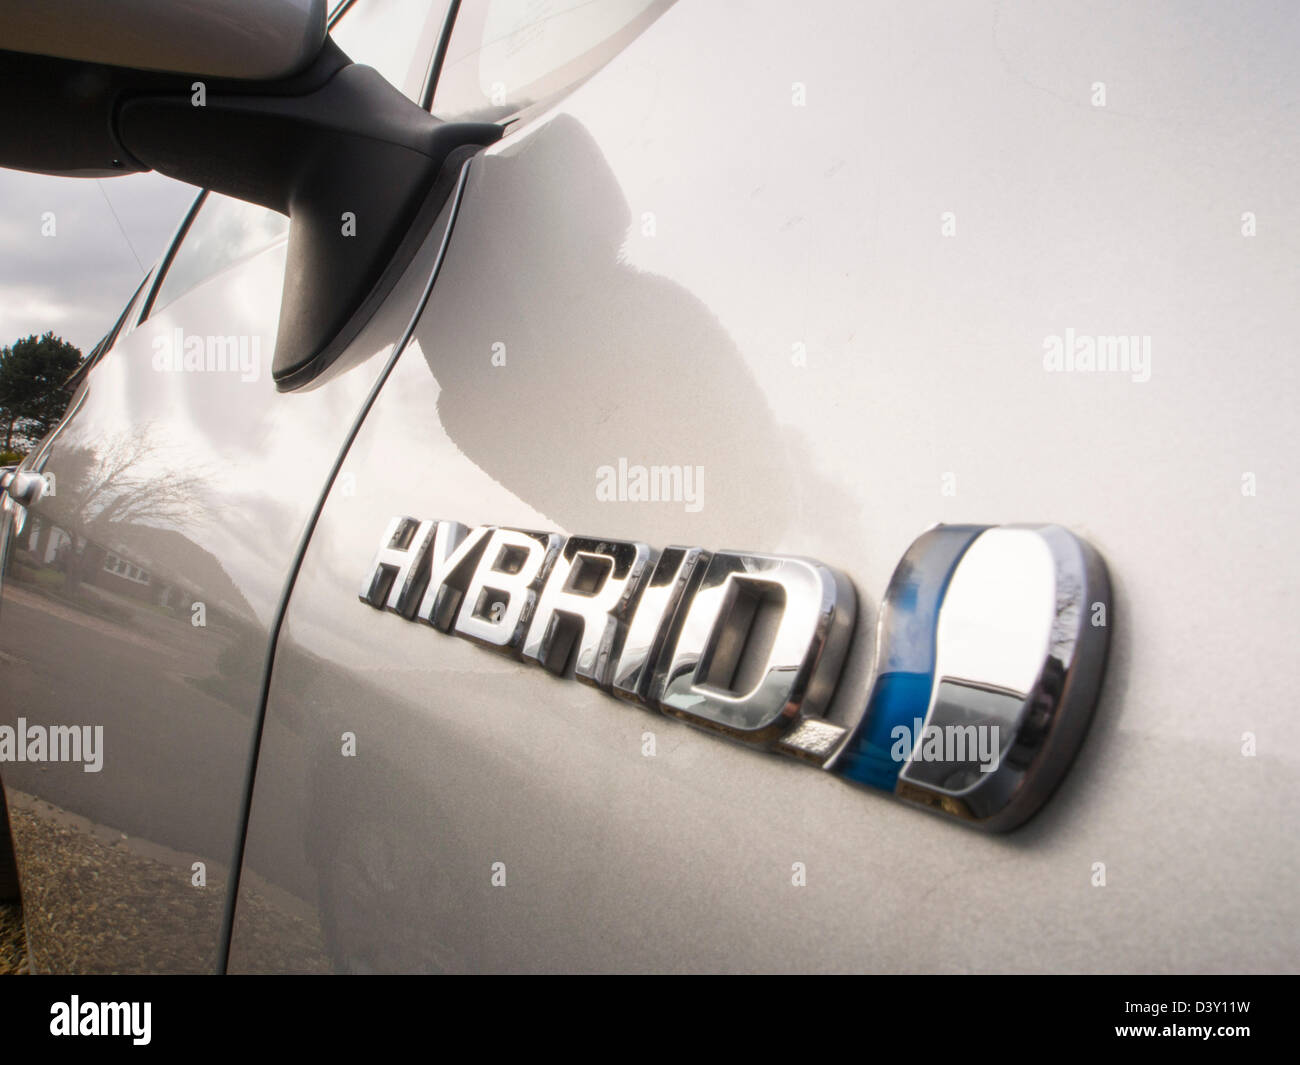 A Toyota Aura a hybrid synergy drive car. Stock Photo